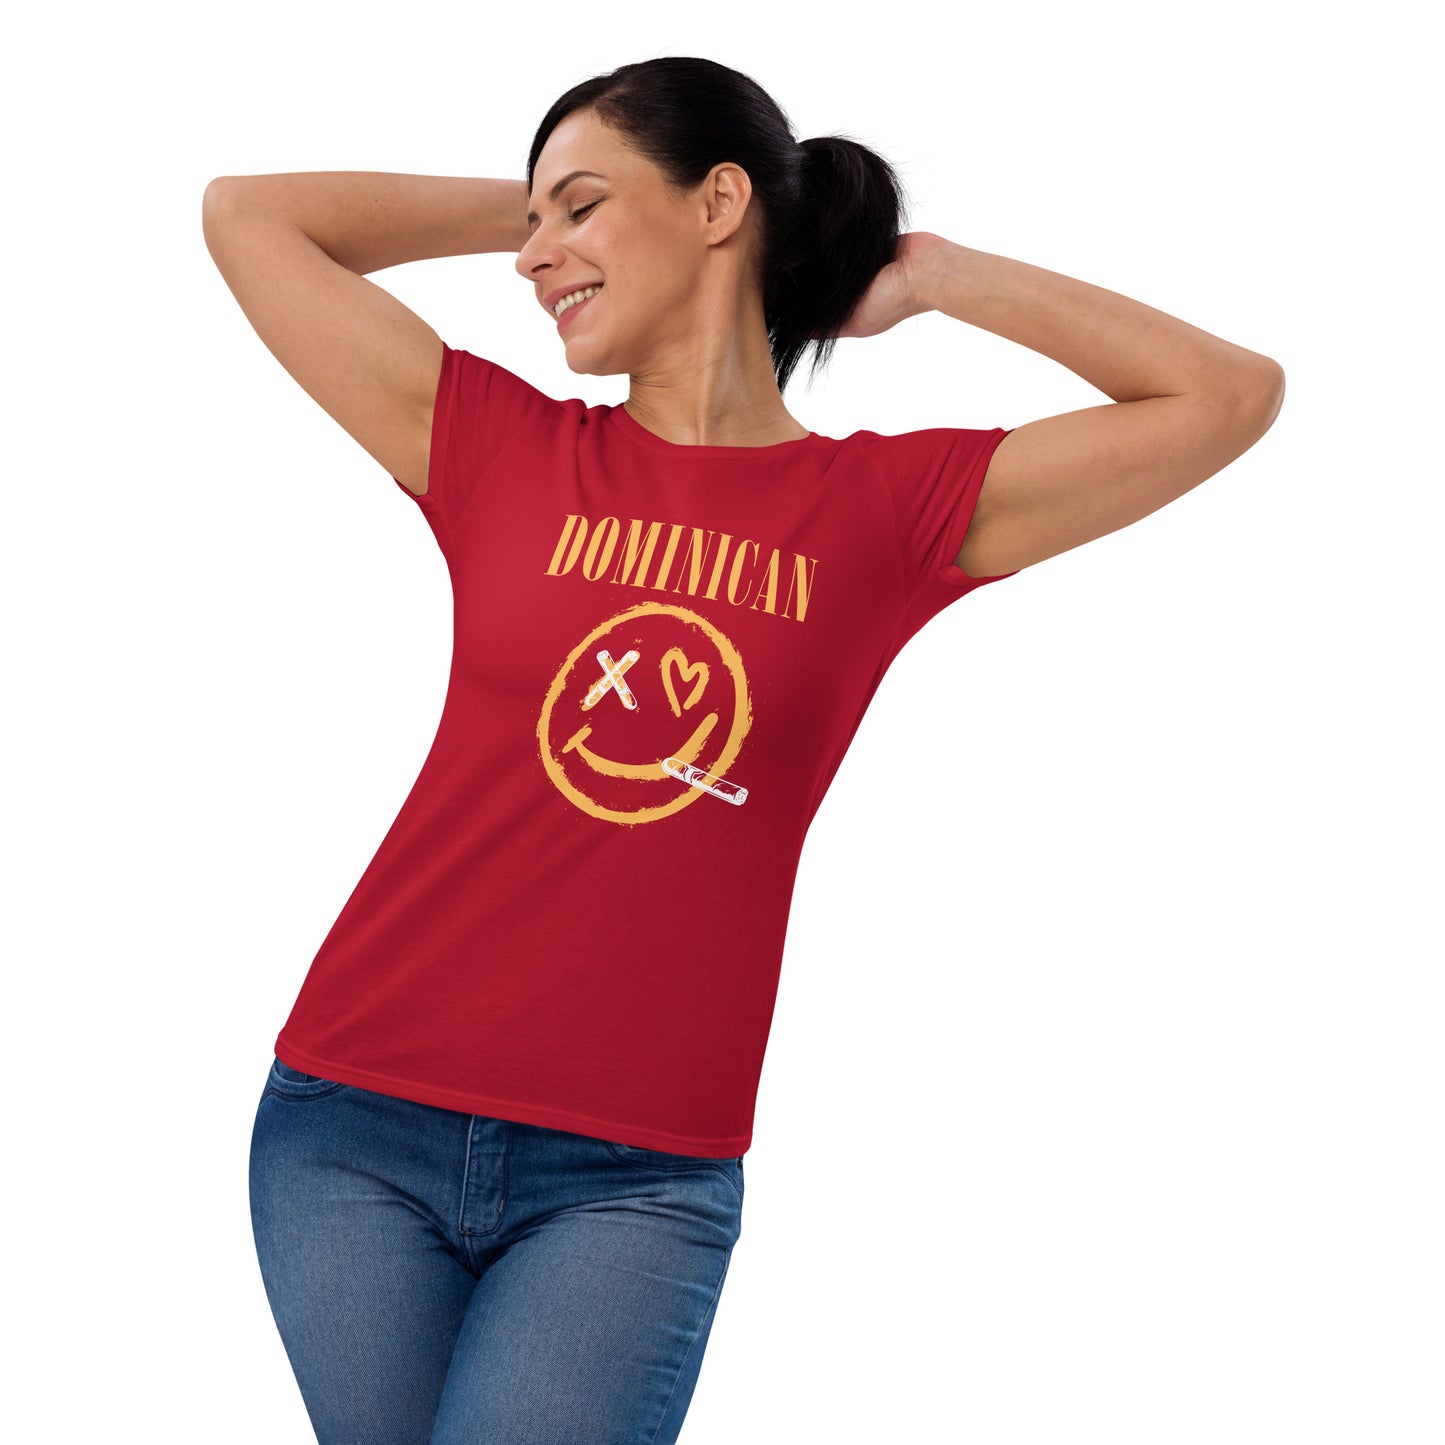 Women's Cut Dominican Bliss short sleeve t-shirt